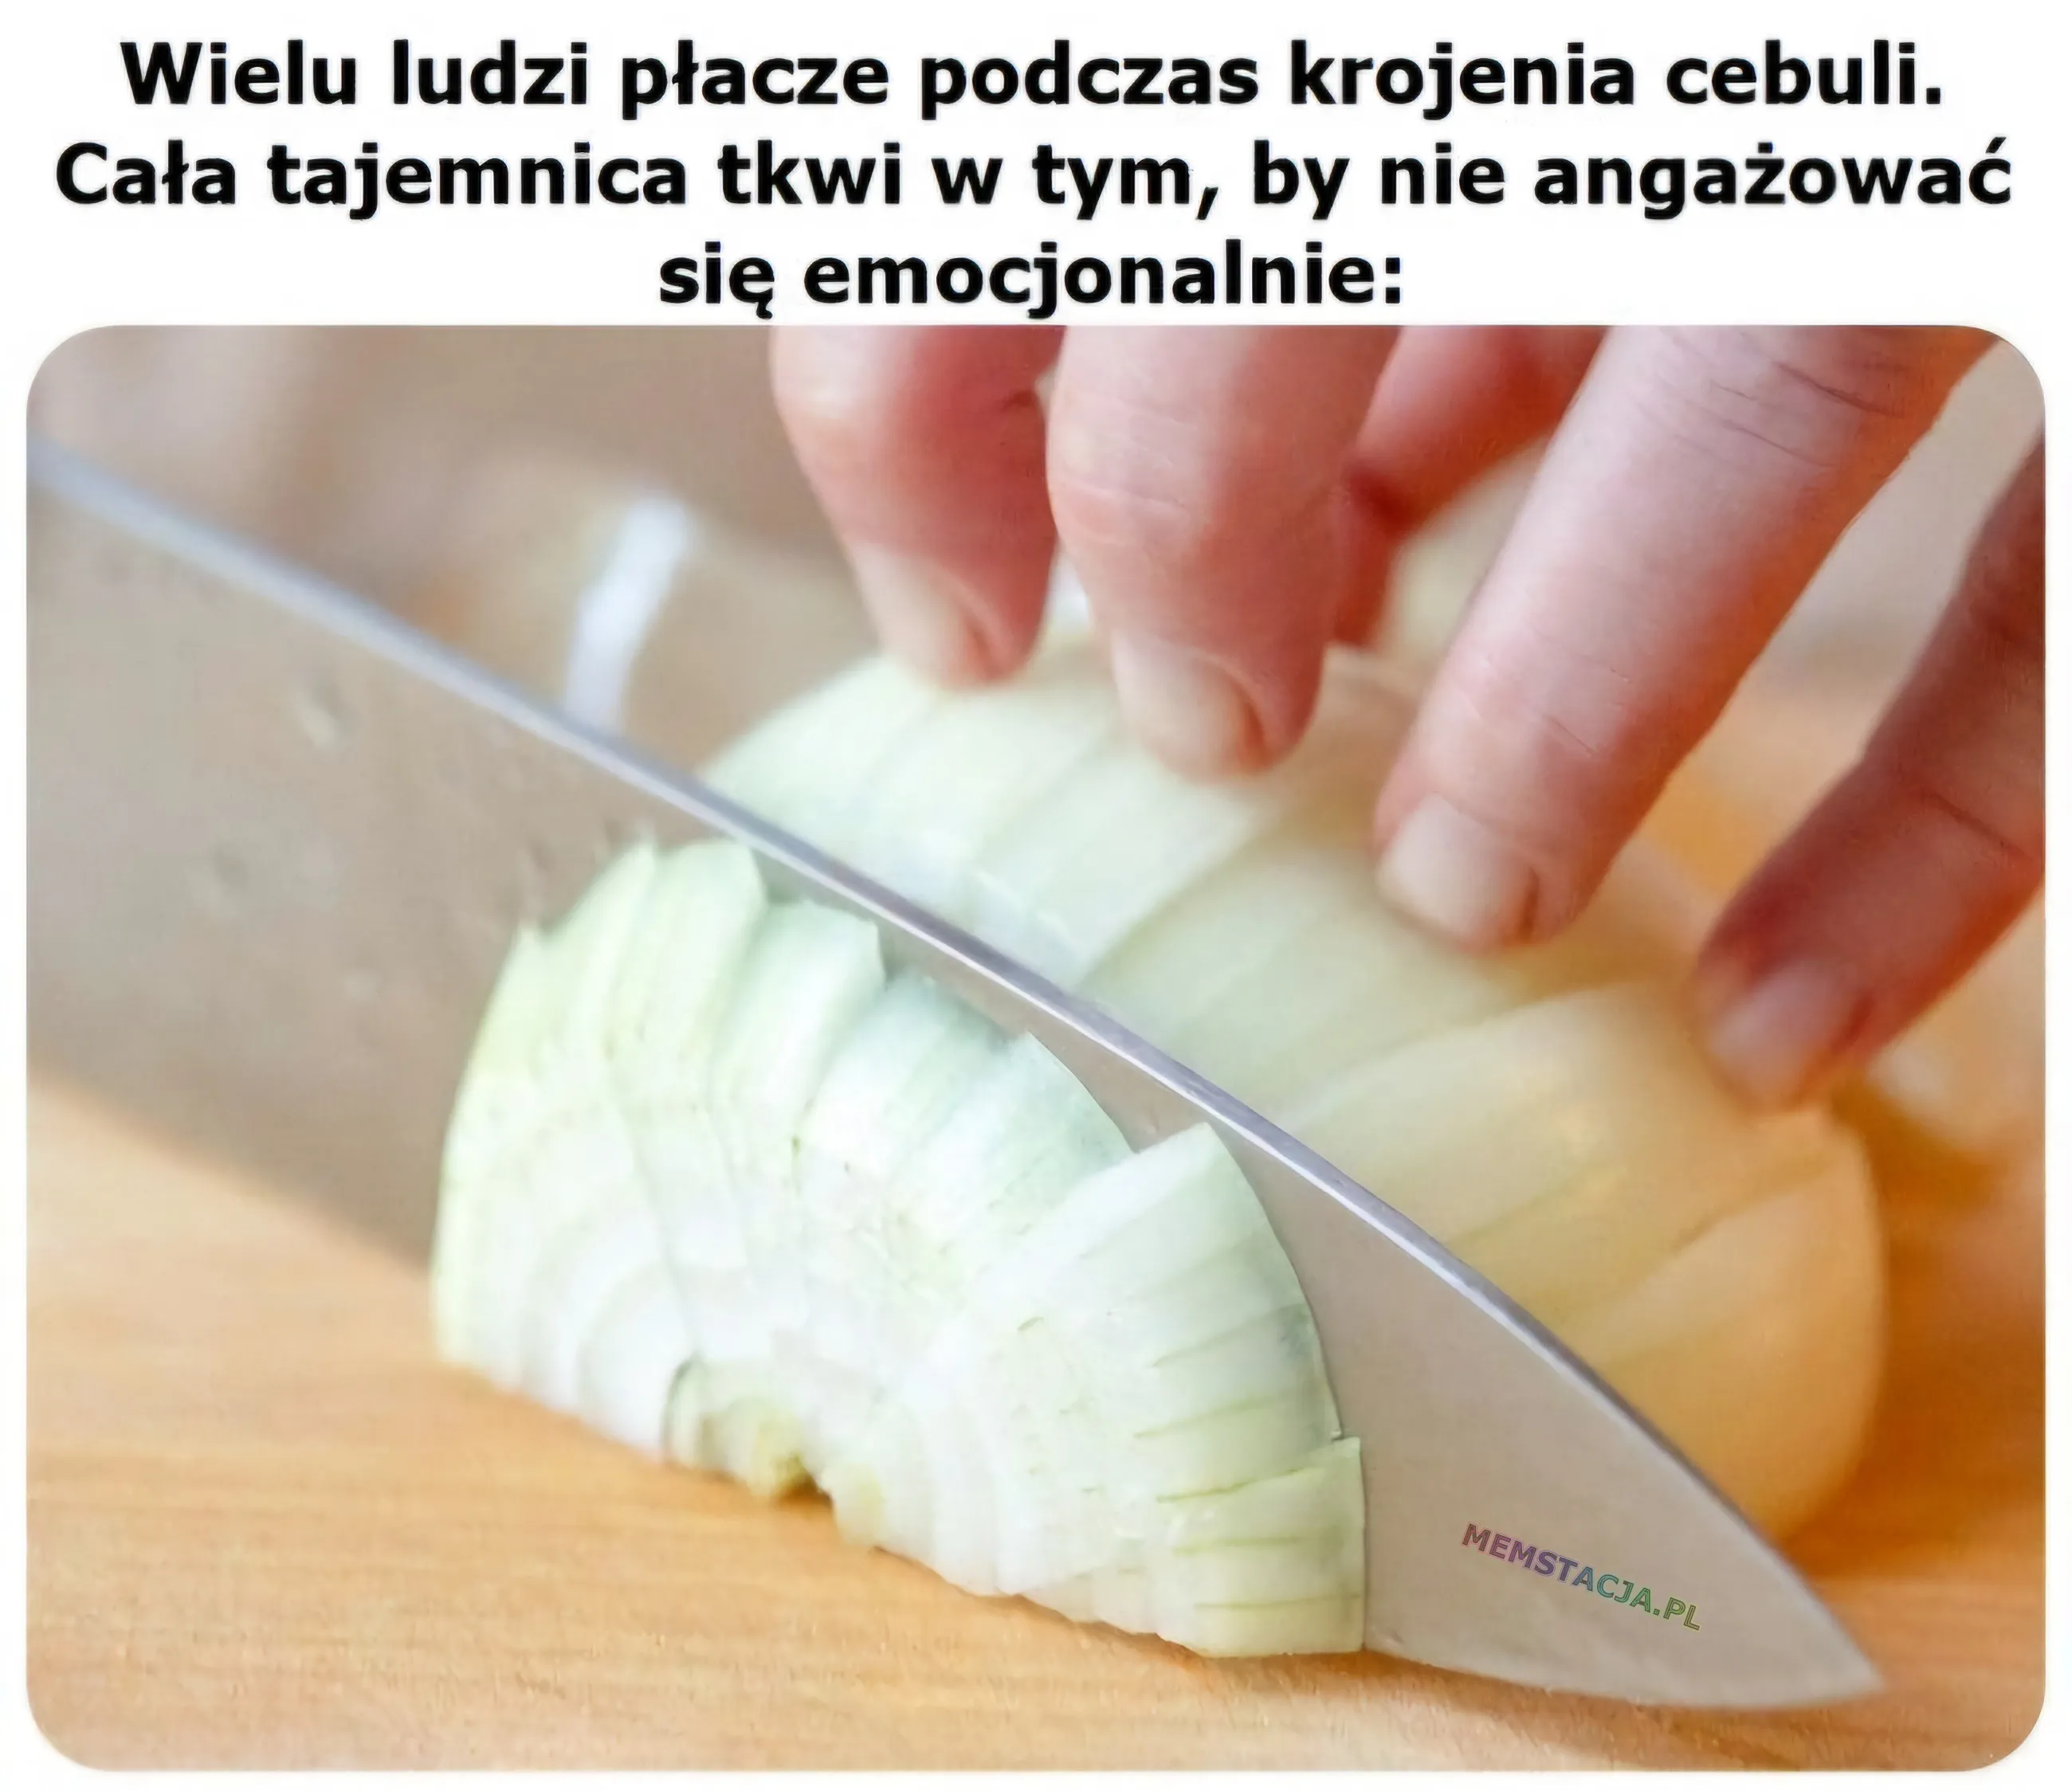 Wielu ludzi płacze podczas krojenia cebuli. Cała tajemnica tkwi w tym, by nie angażować się emocjonalnie: Zdjęcie krojonej cebuli